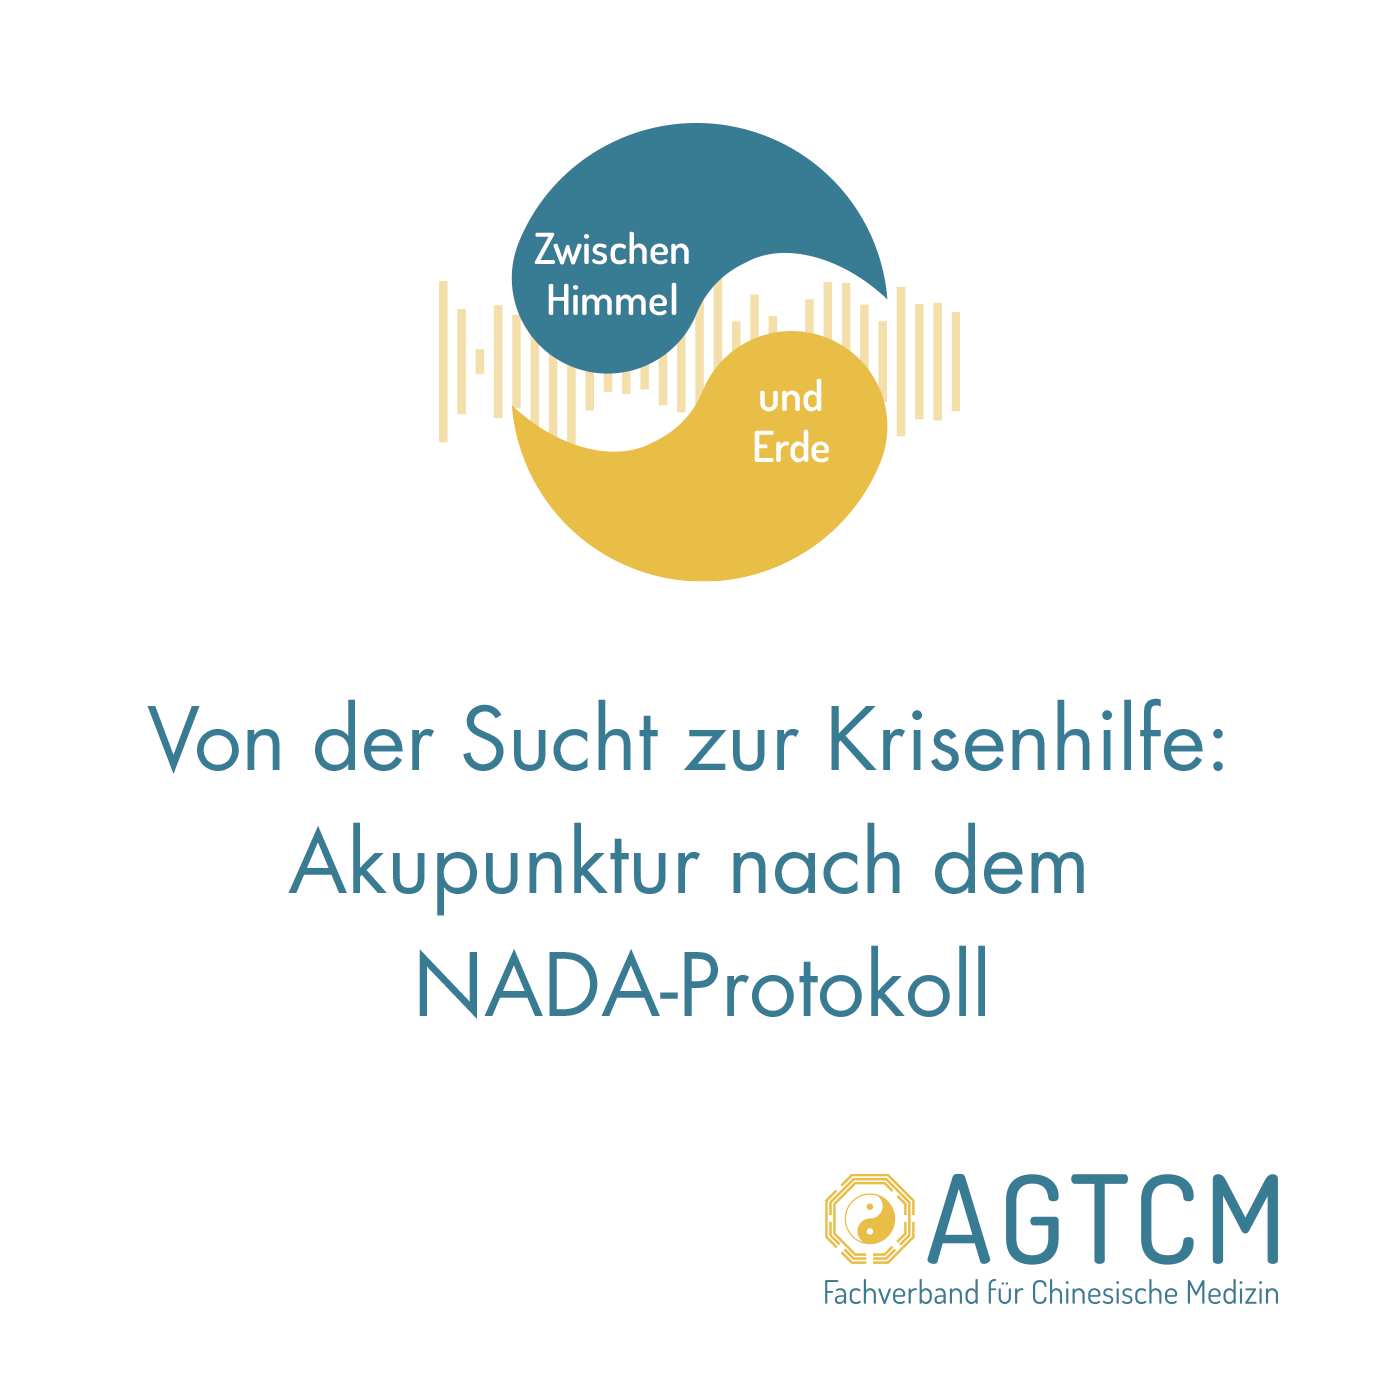 Von der Sucht zur Krisenhilfe: Akupunktur nach dem NADA-Protokoll